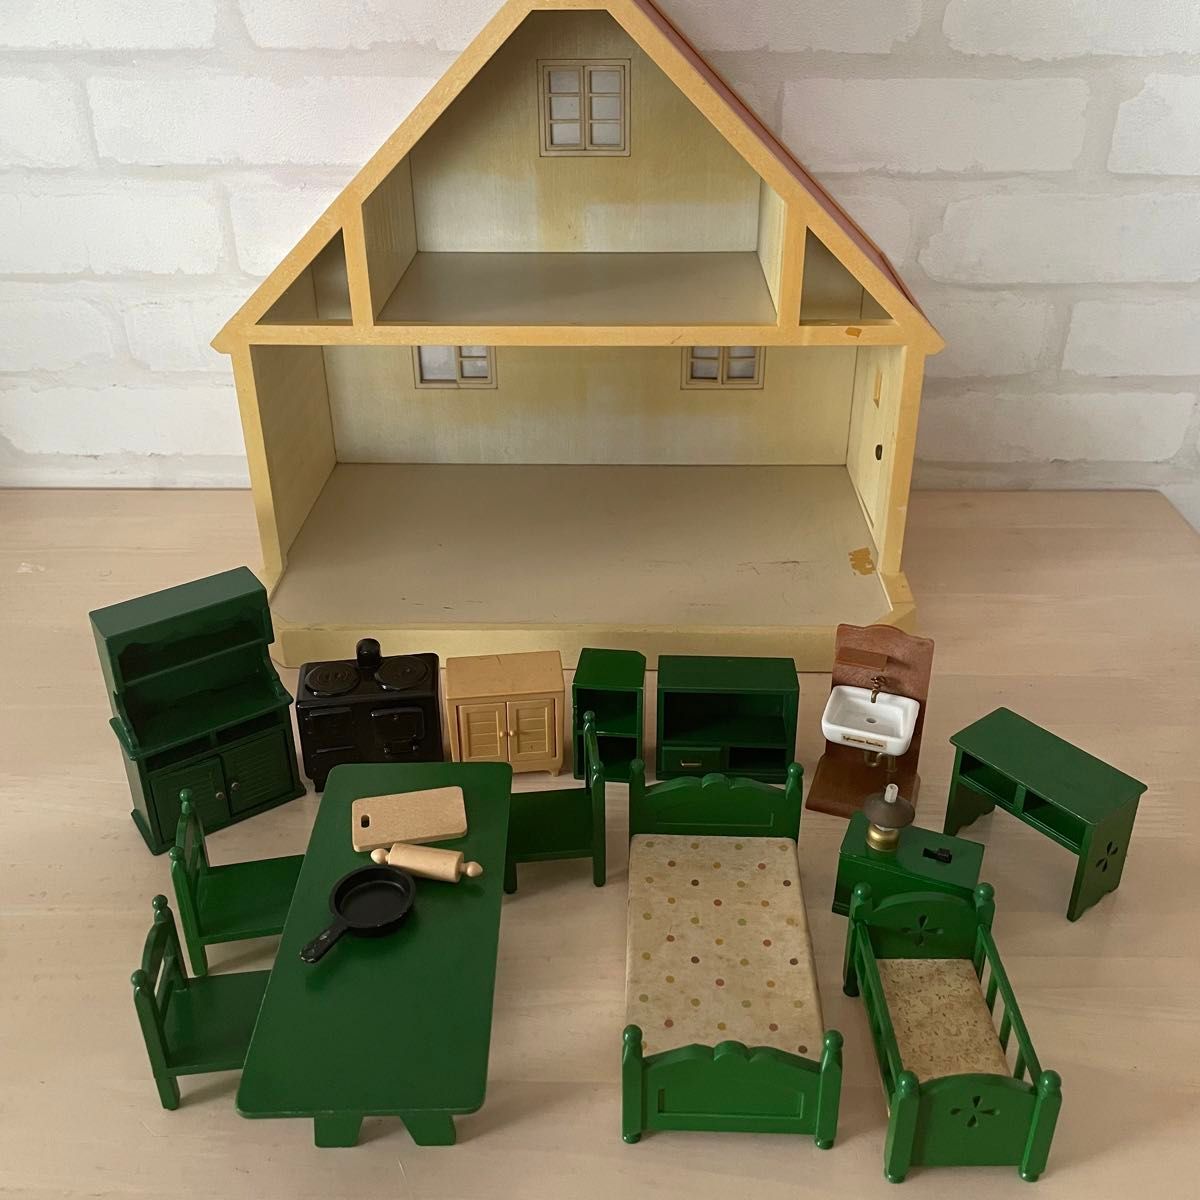 【ジャンク】初期シルバニアファミリー白いお家と緑の家具セット  エポック社